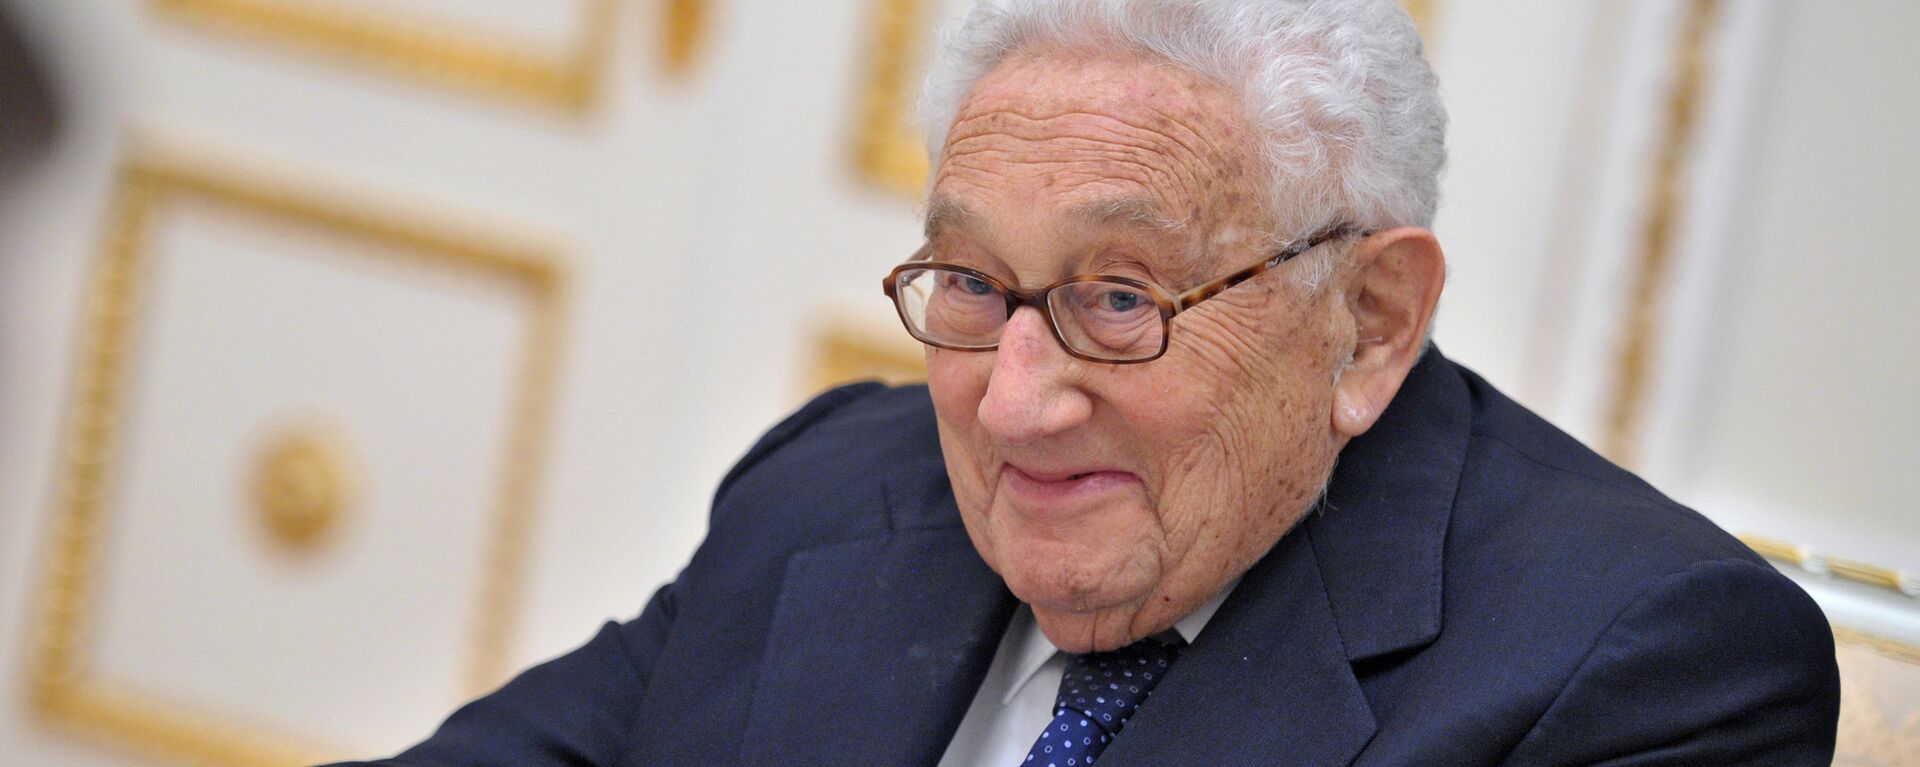 Henry Kissinger - Sputnik Mundo, 1920, 21.10.2018